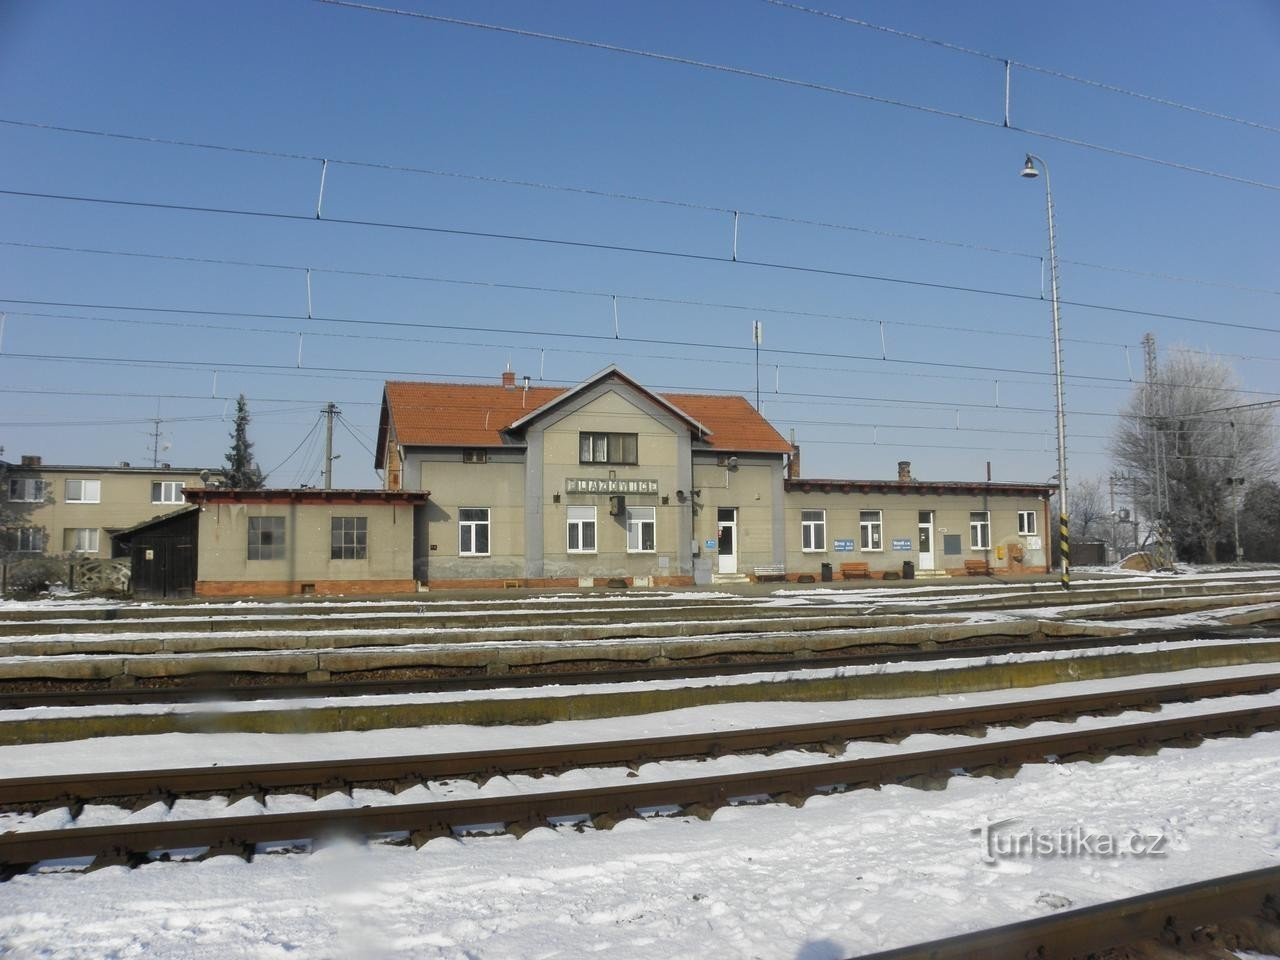 鉄道ブラジョヴィツェ - 29.1.2011